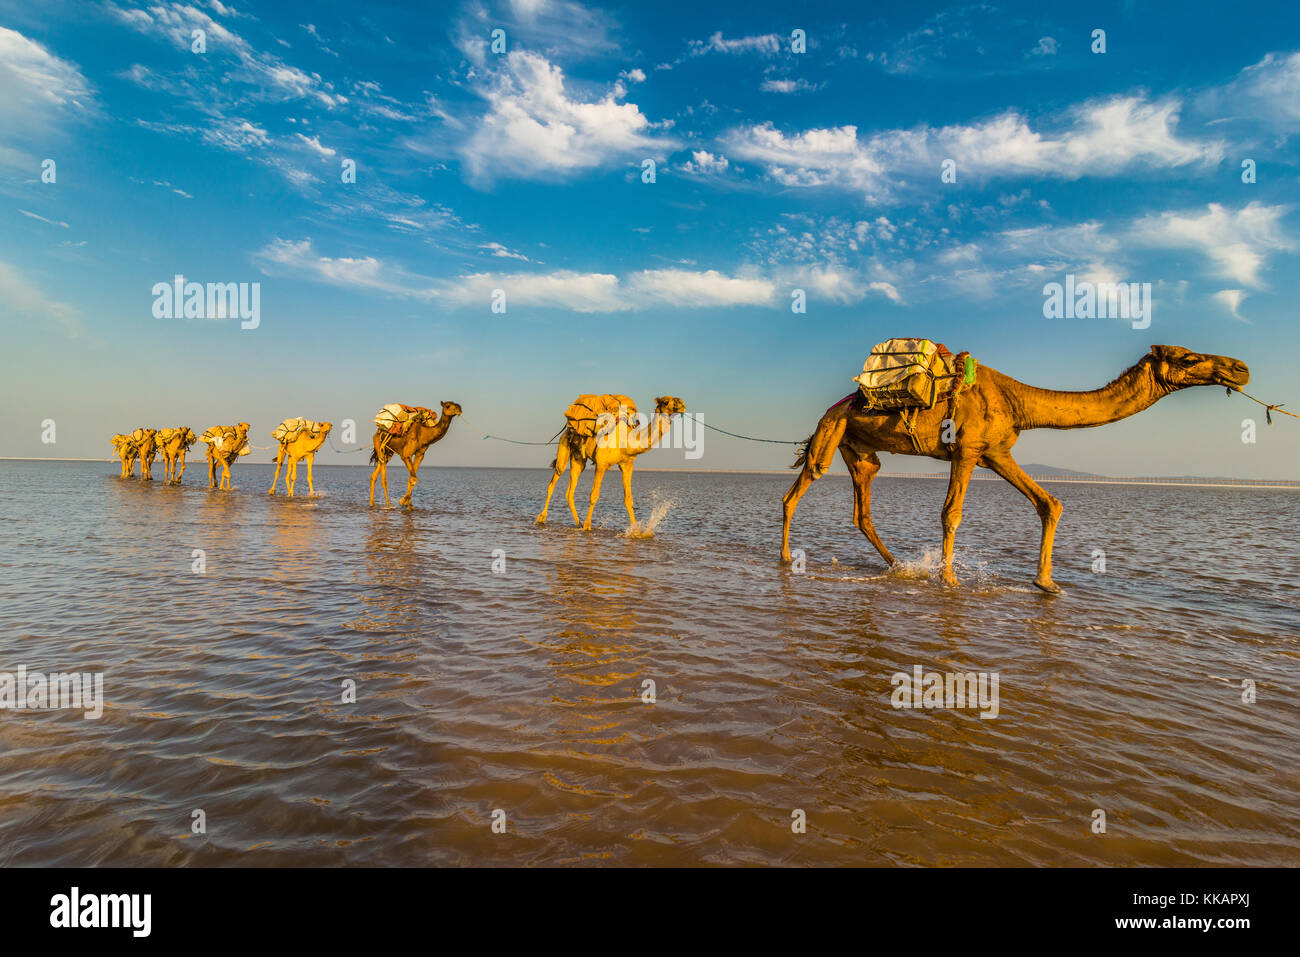 Les chameaux chargés de casseroles de sel marche à travers un lac salé, la dépression Danakil, l'Éthiopie, l'Afrique Banque D'Images